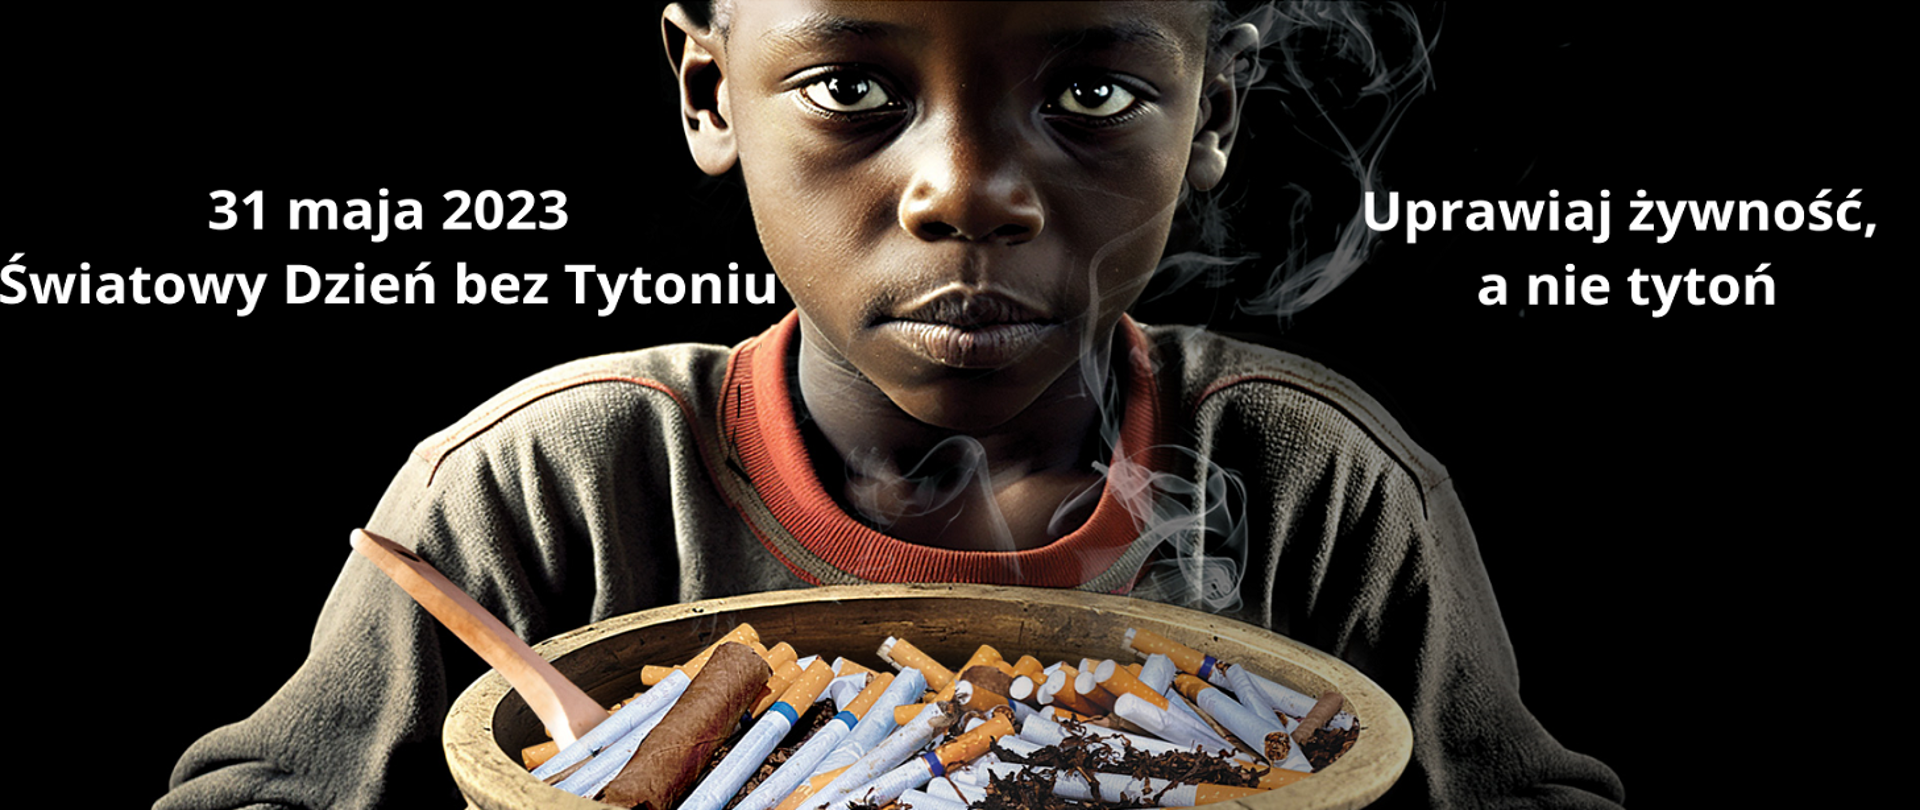 Zdjęcie czarnoskórego chłopca, przed którym znajduje się miska na jedzenie, ale zamiast pokarmu jest w niej mnóstwo papierosów i cygarów. Na czarnym tle widnieje napis: Światowy Dzień bez Tytoniu 2023 - Uprawiaj żywność, a nie tytoń.